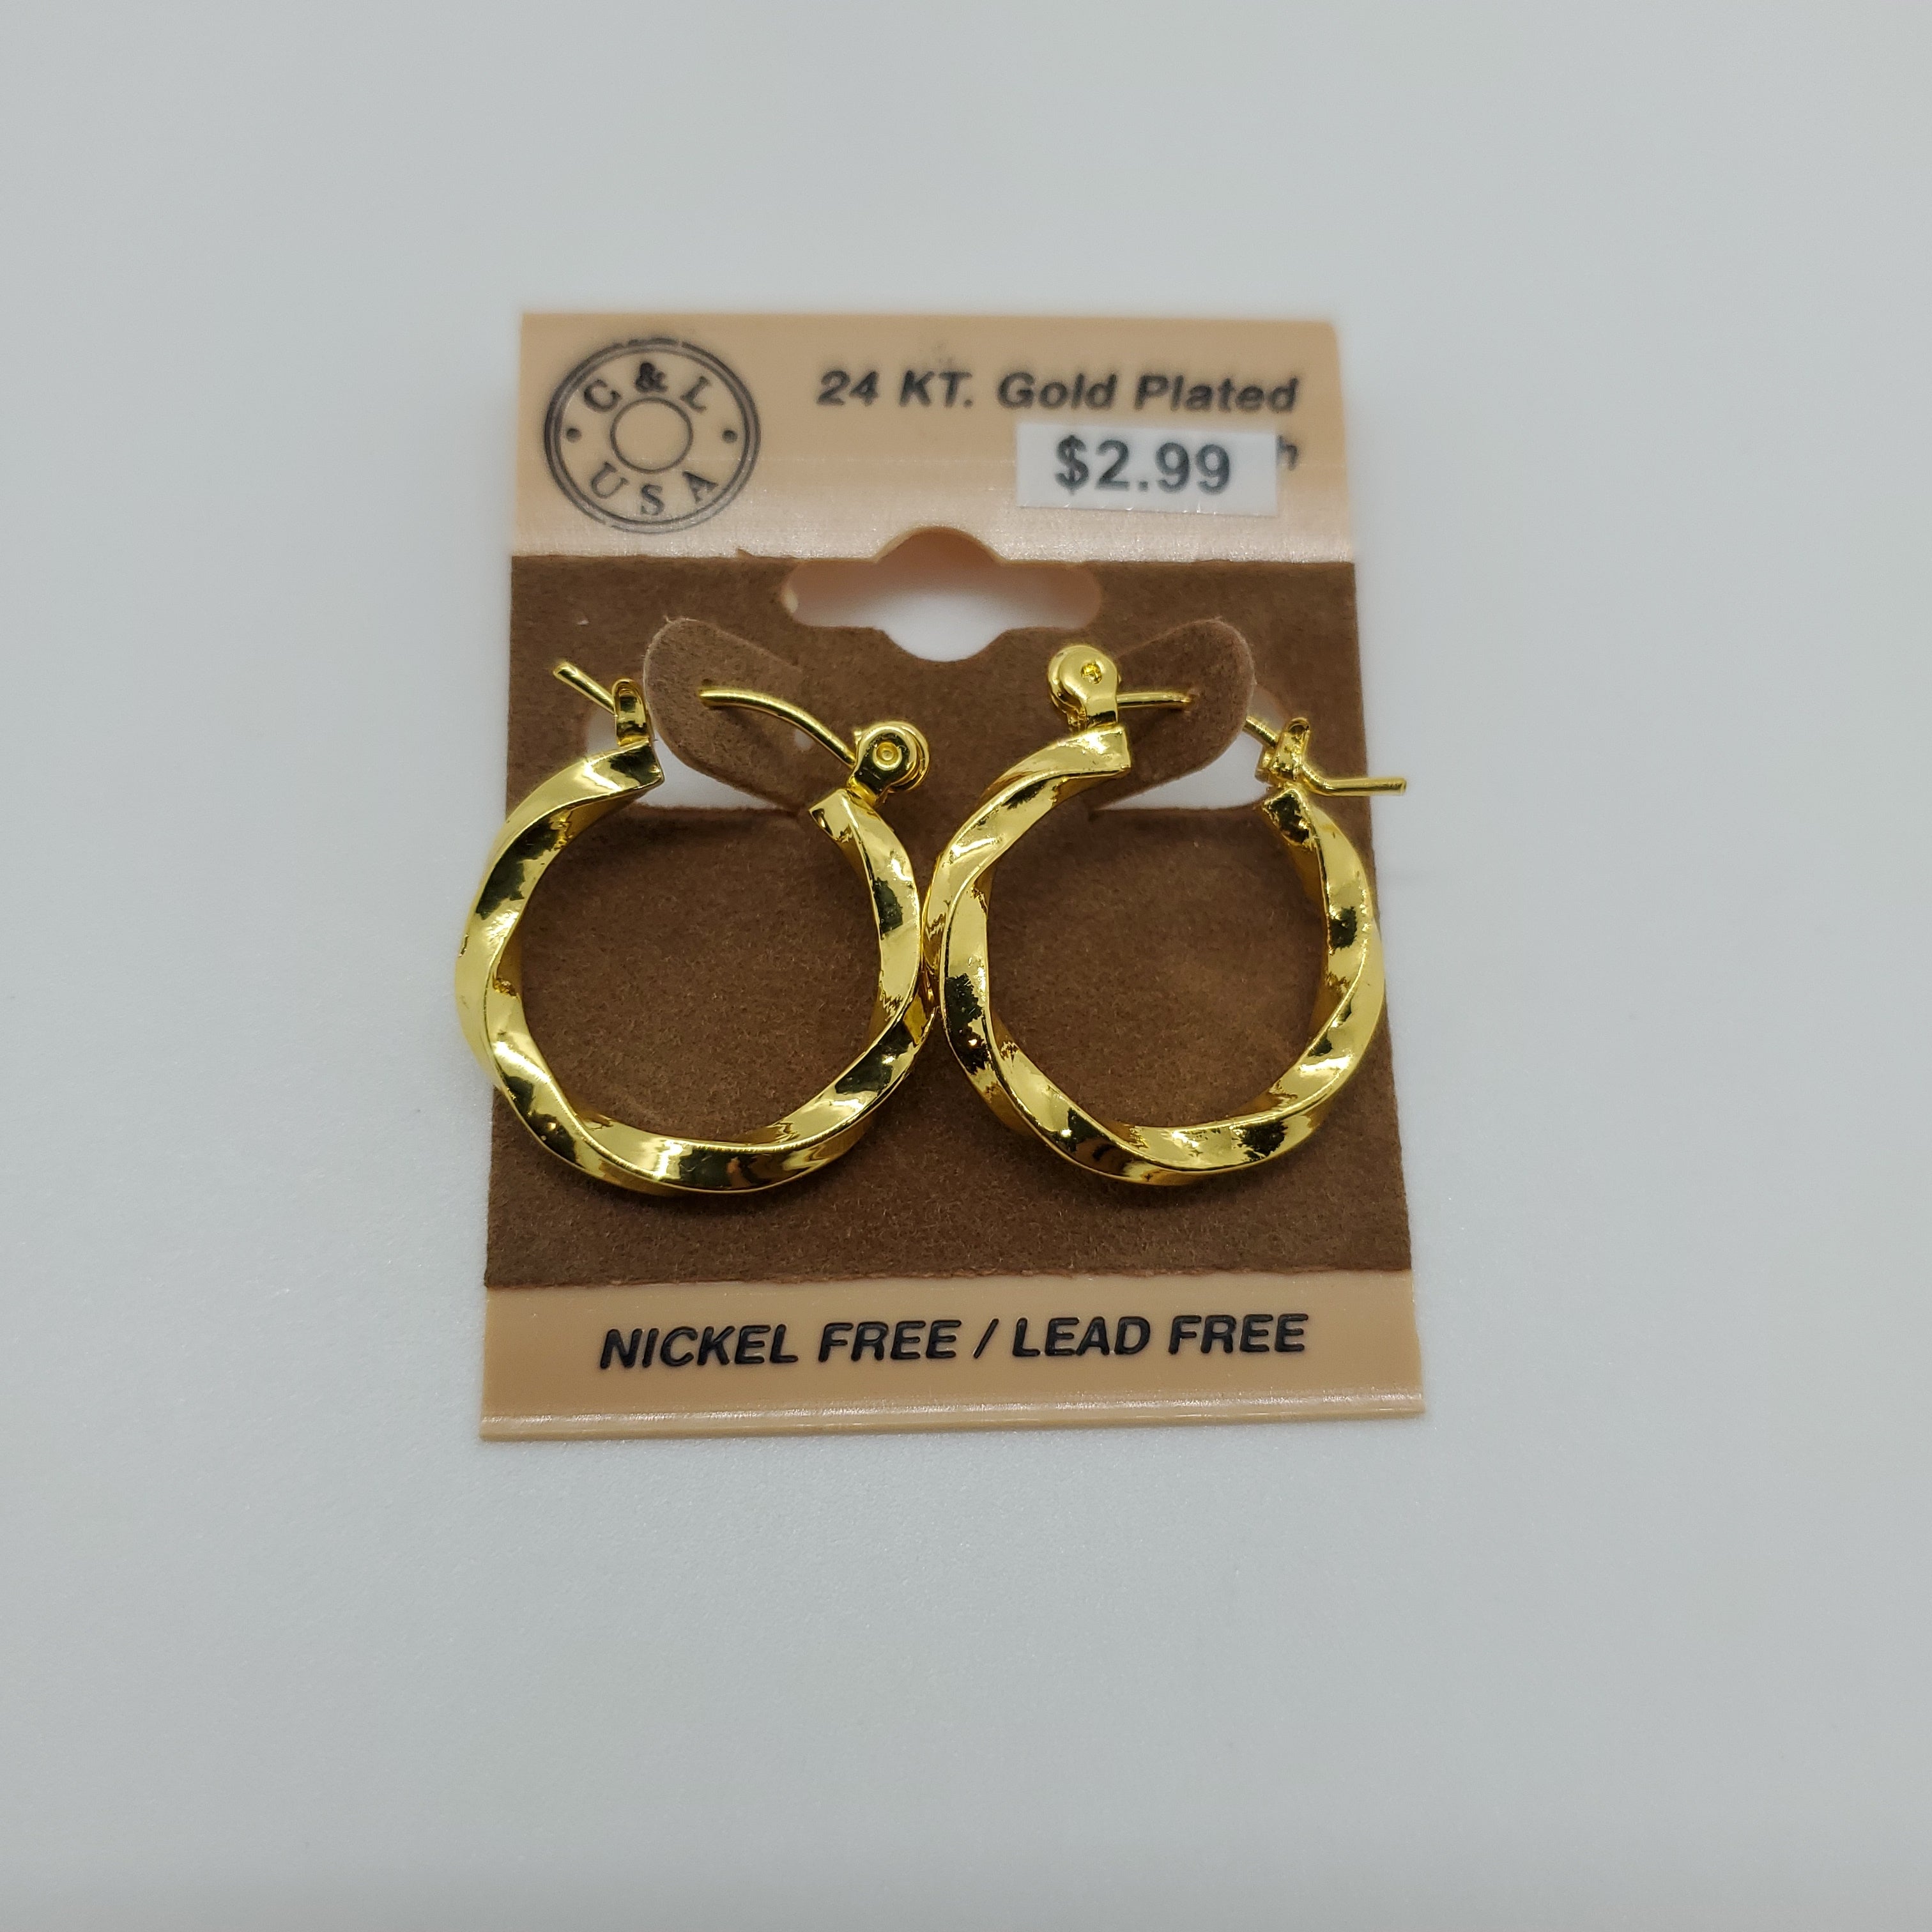 24KT Gold Plated Pincatch Hoop Earrings NPK110 - Beauty Bar & Supply